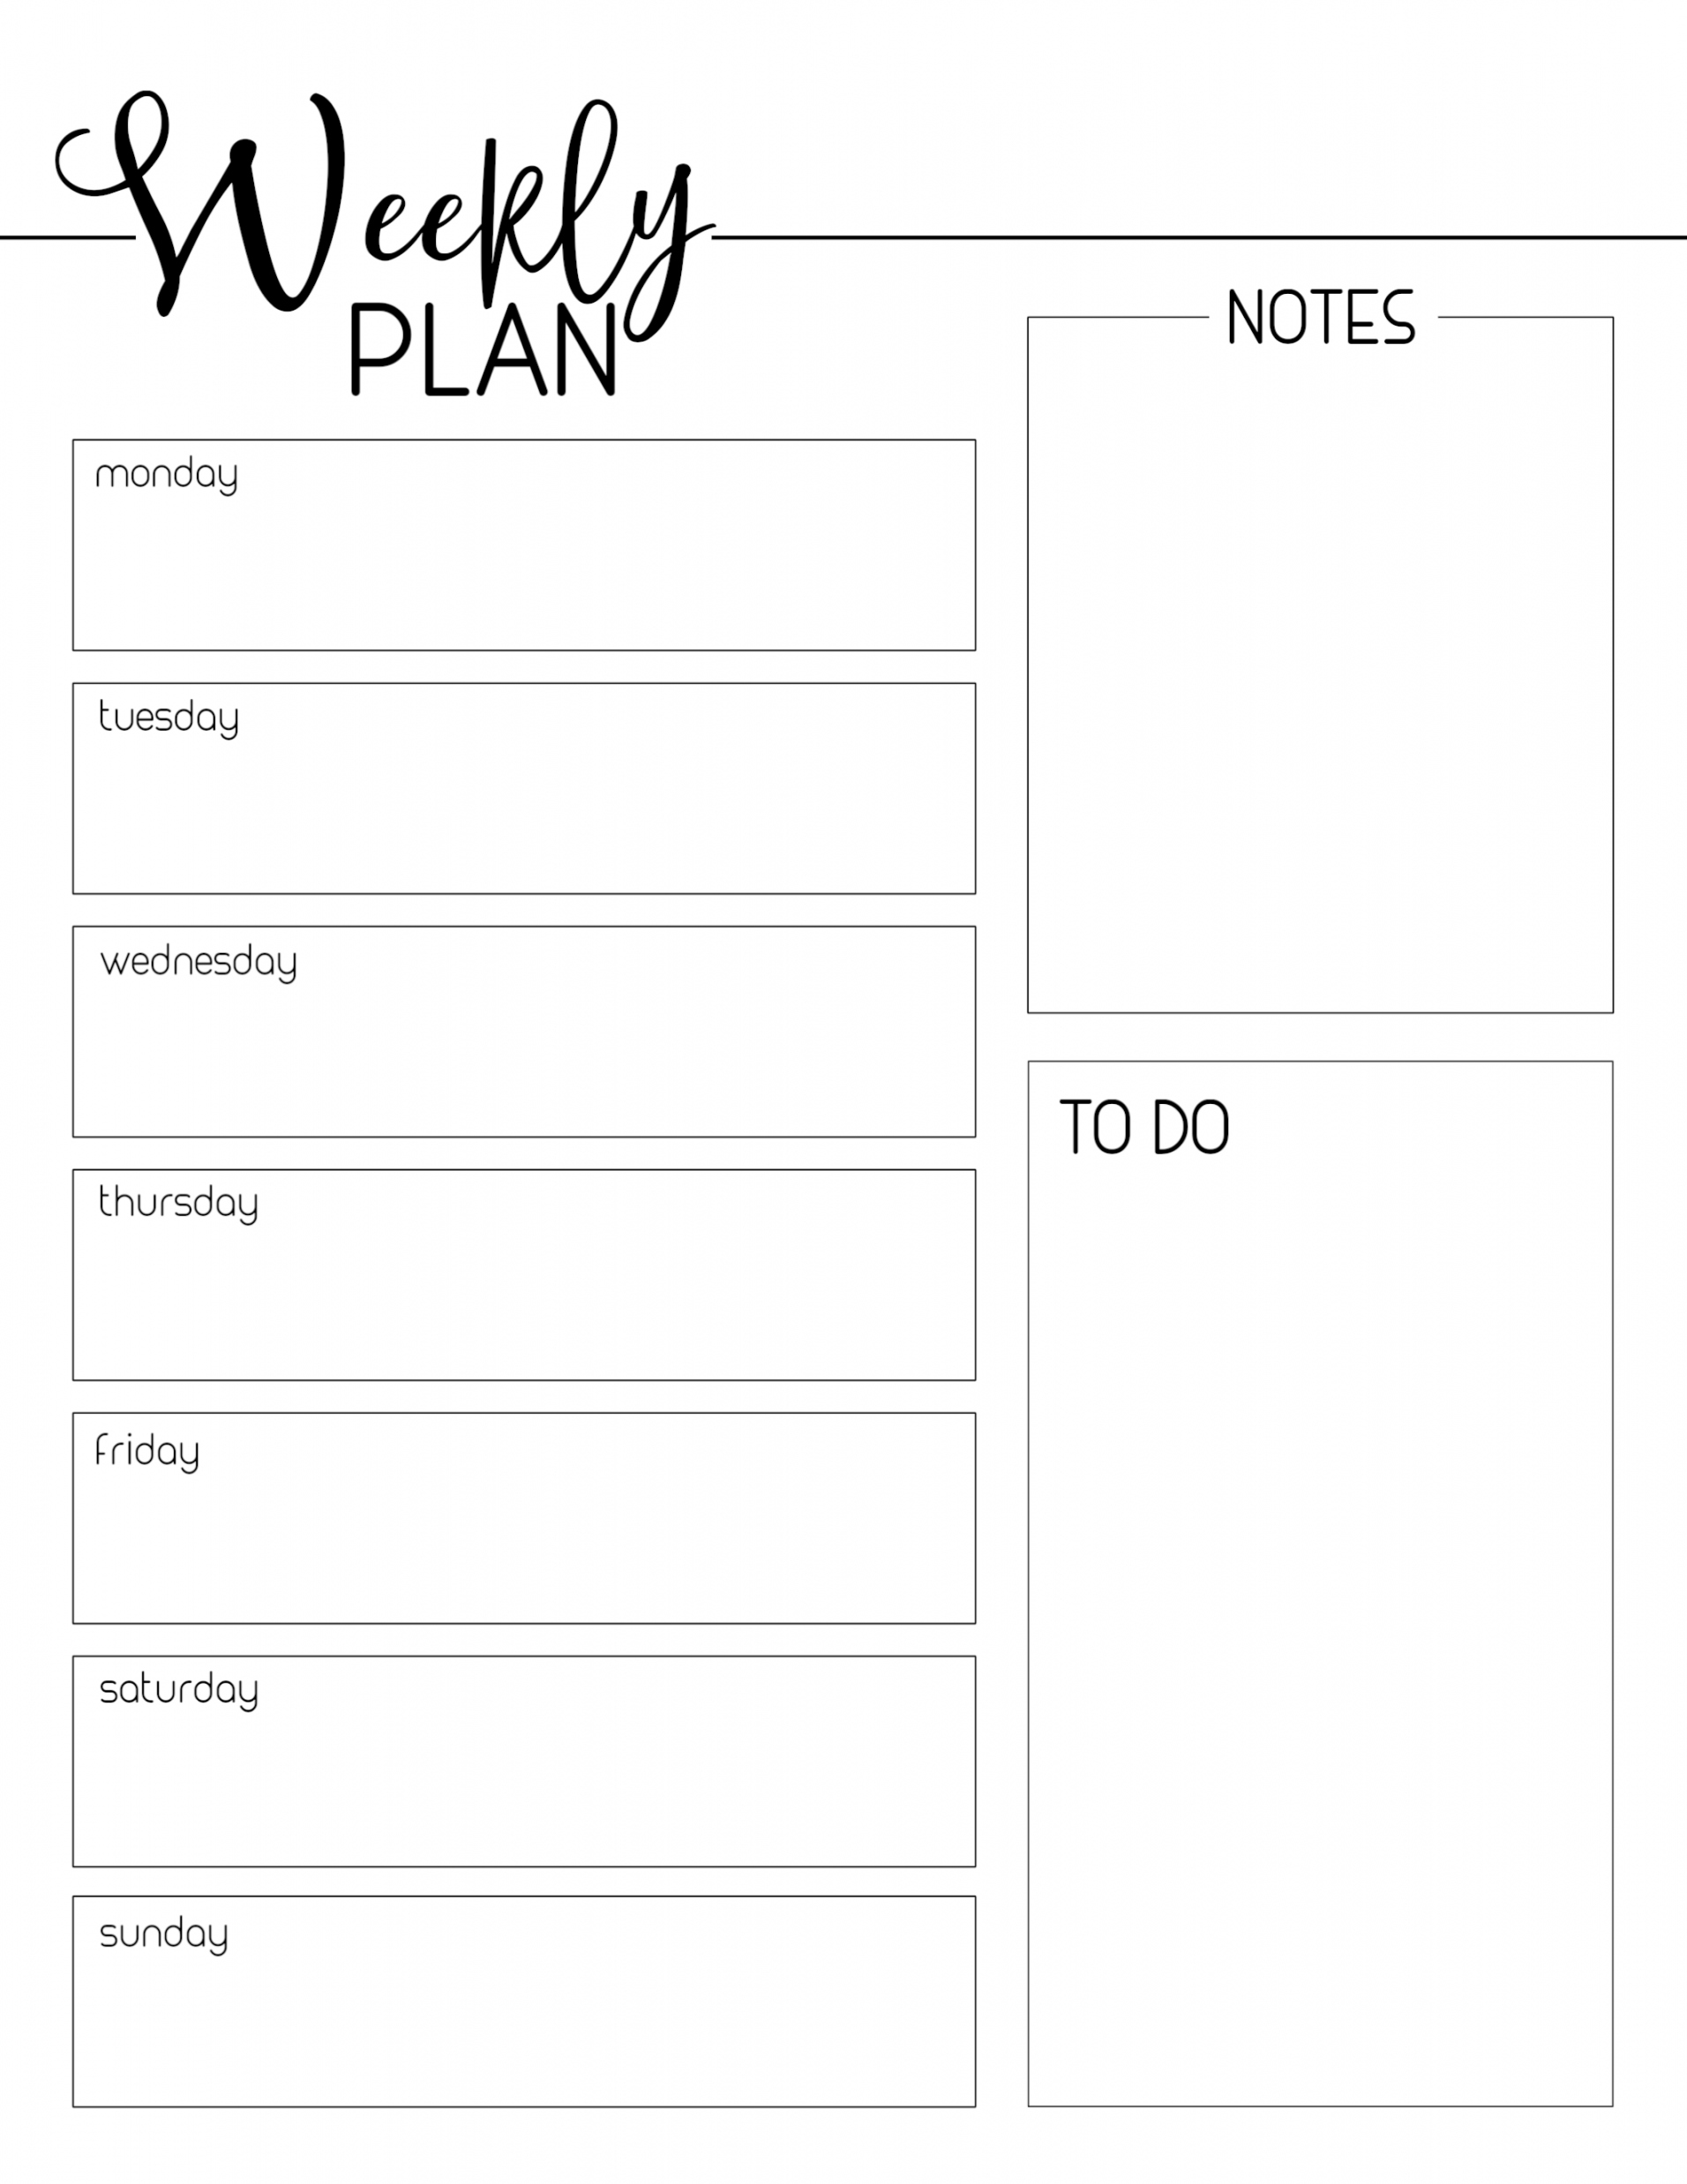 Free Printable Weekly Planners - Printable - Weekly Planner Template Free Printable - Paper Trail Design